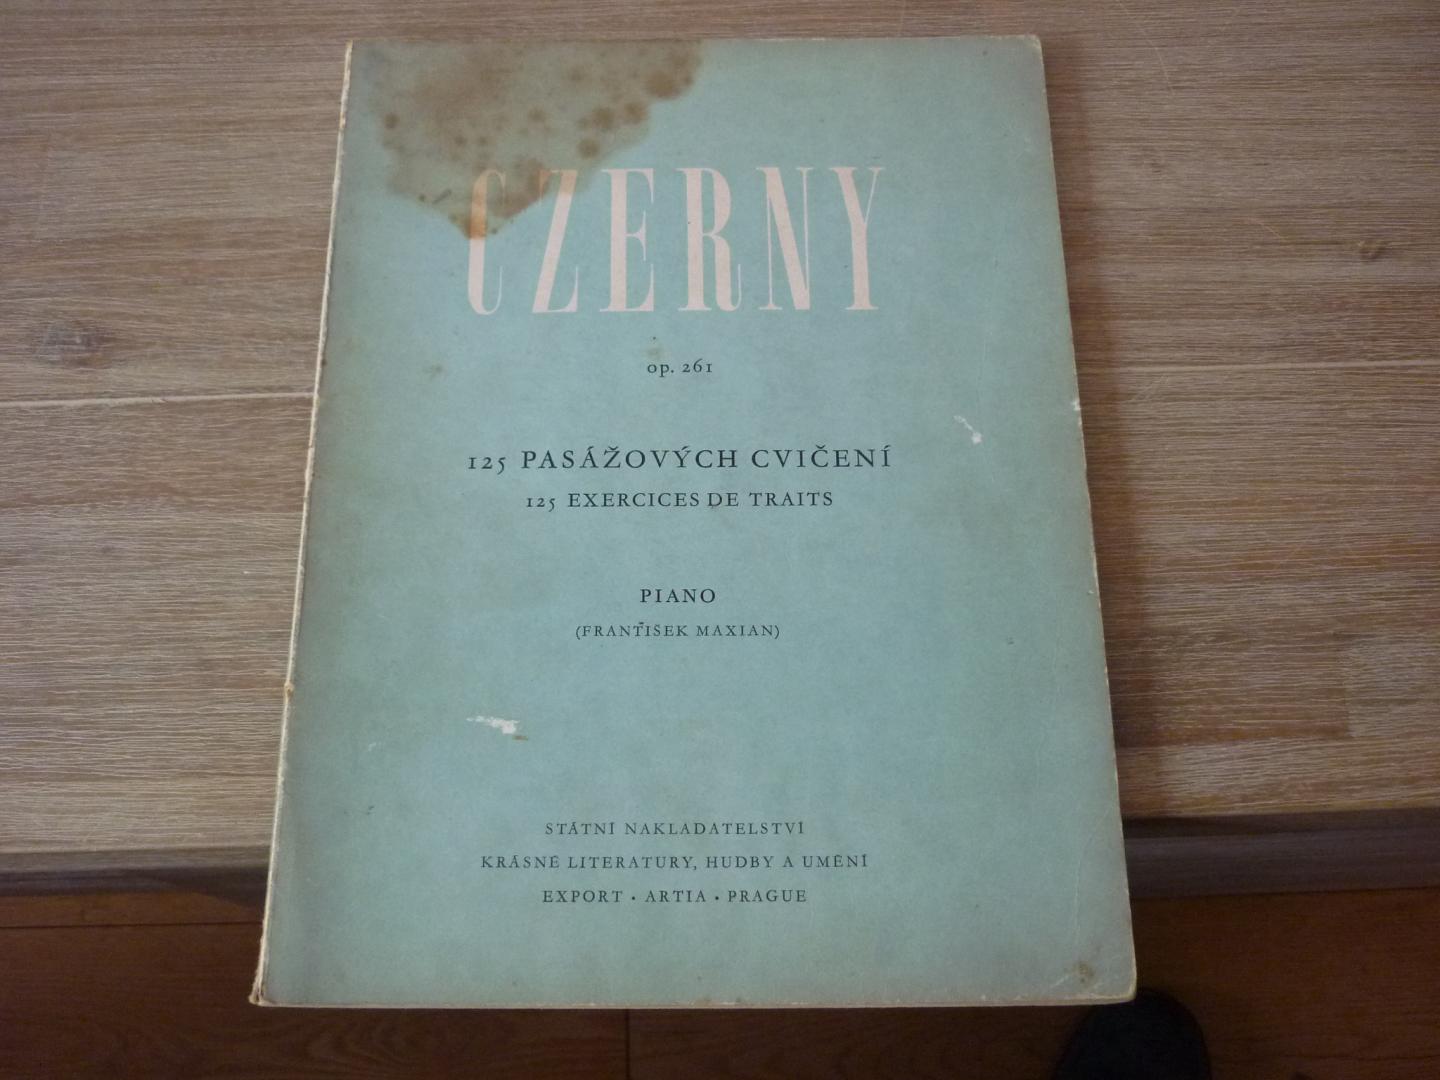 Czerny; Carl (1791–1857) - 125 Passagenübungen op. 261 für Klavier - voor Piano (Rev. Frantisek Maxian)